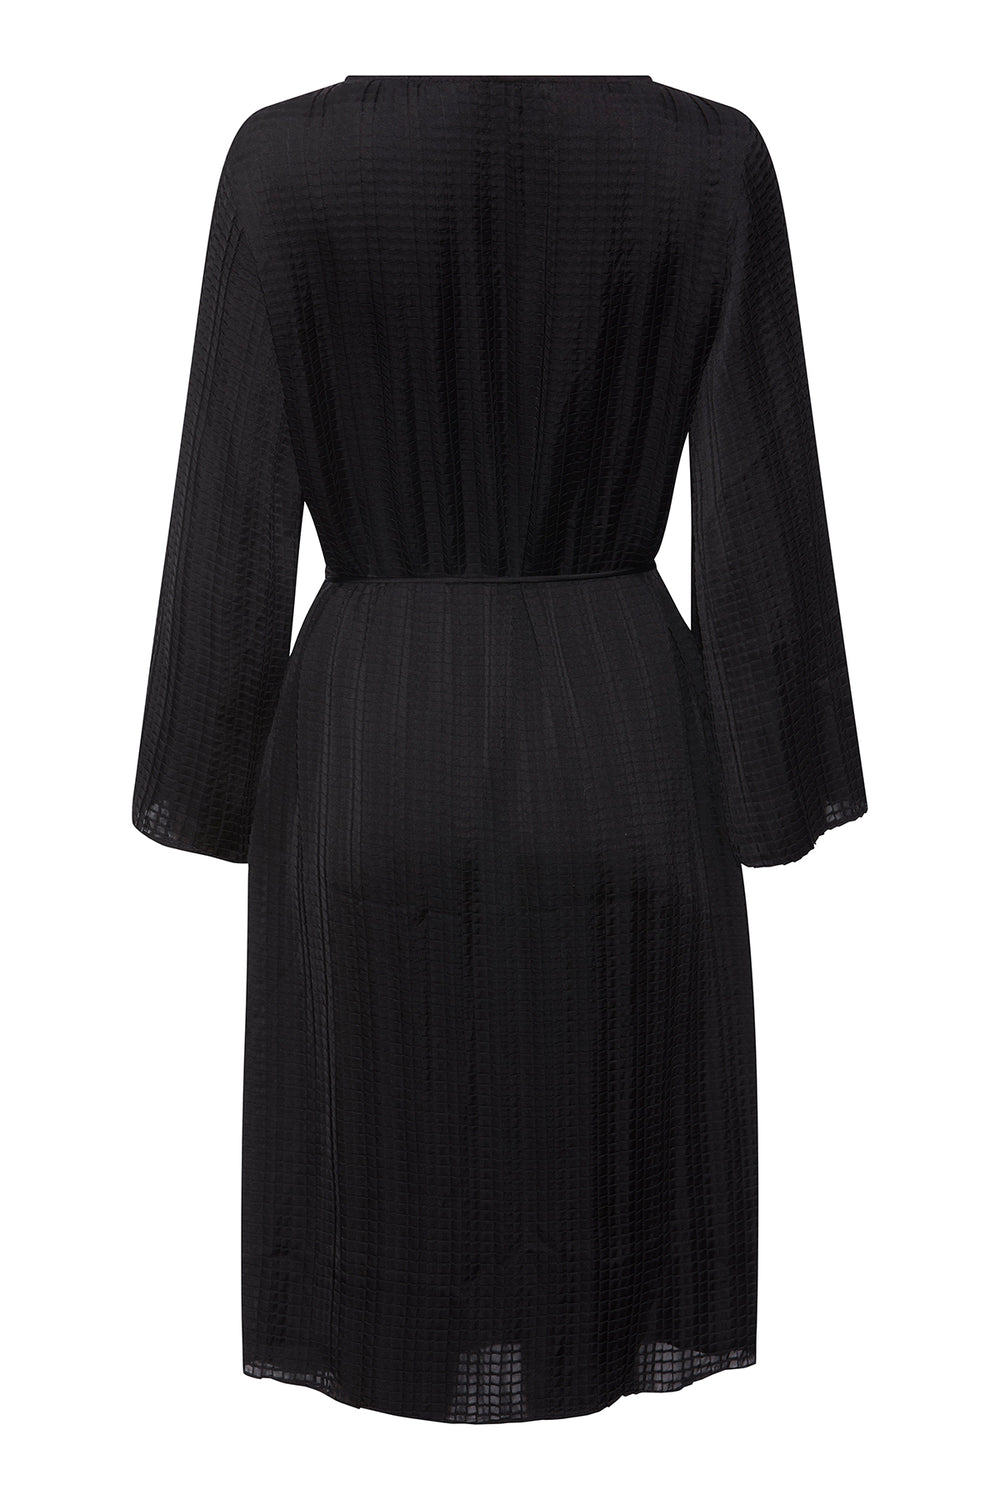 PBO Kea dress DRESSES 20 Black